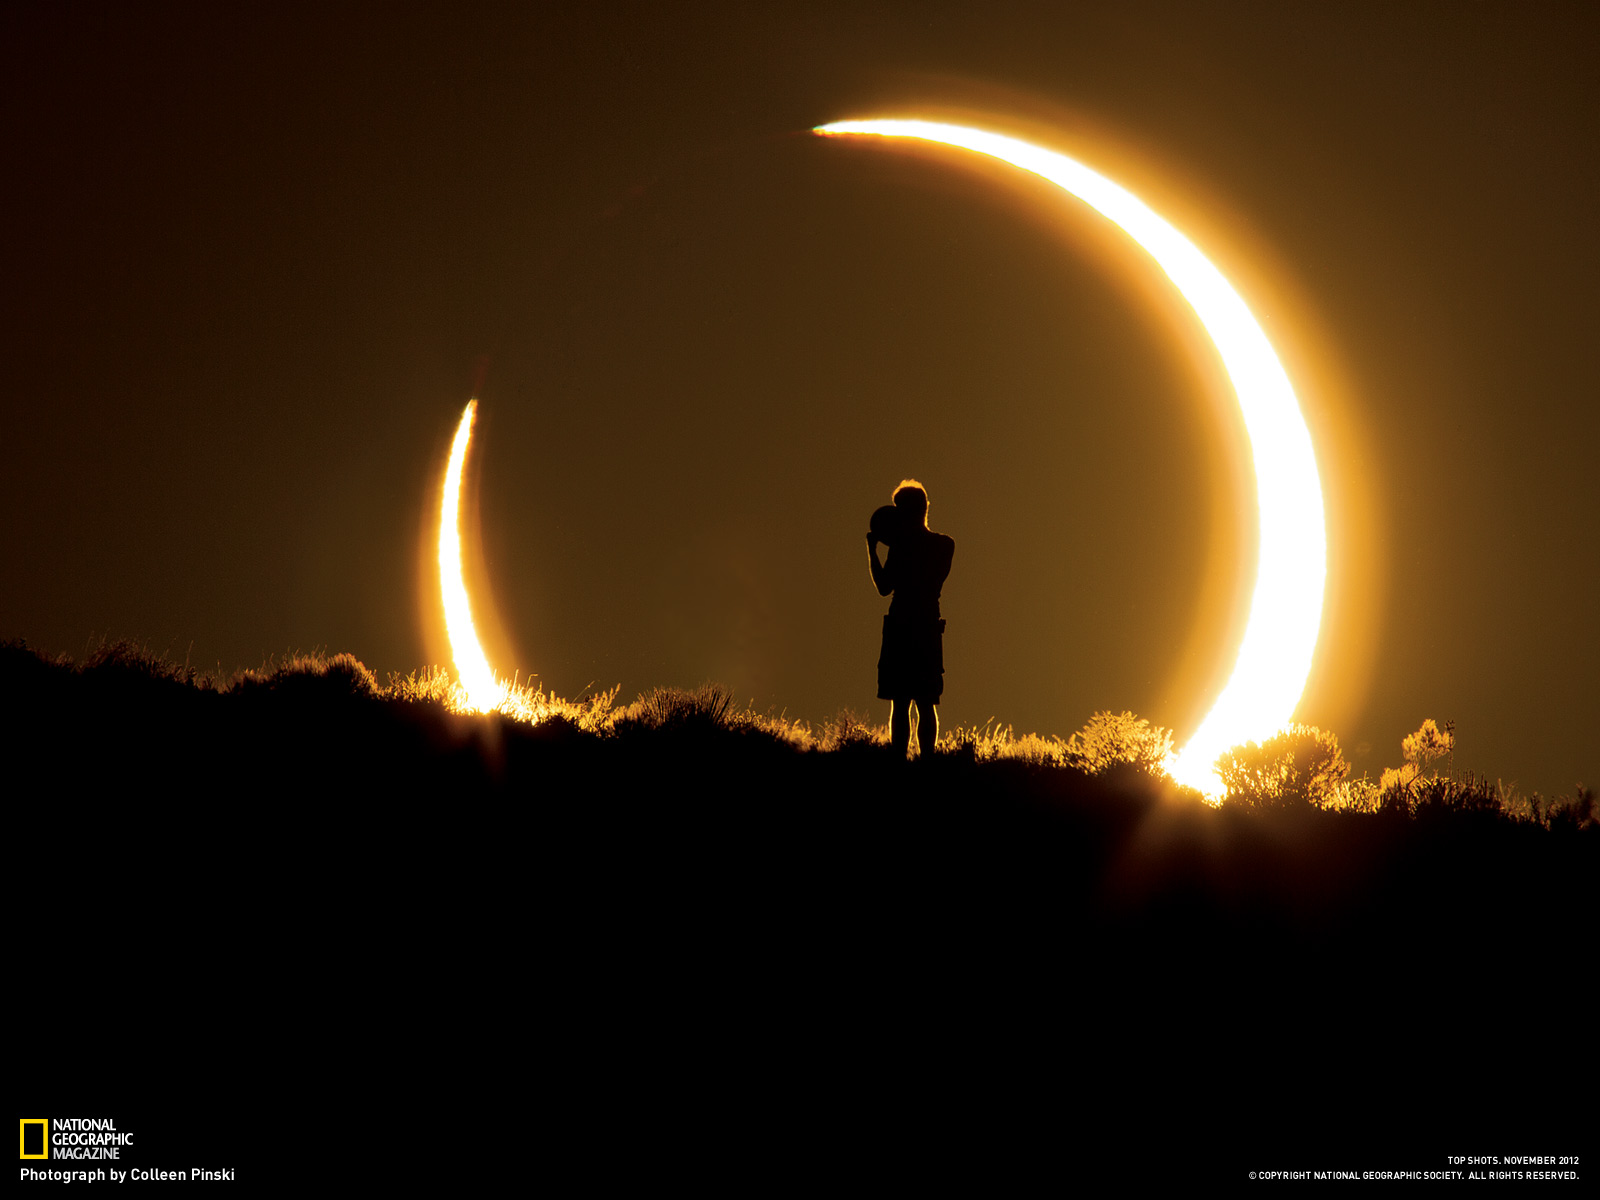 sonnenfinsternis, eclipse